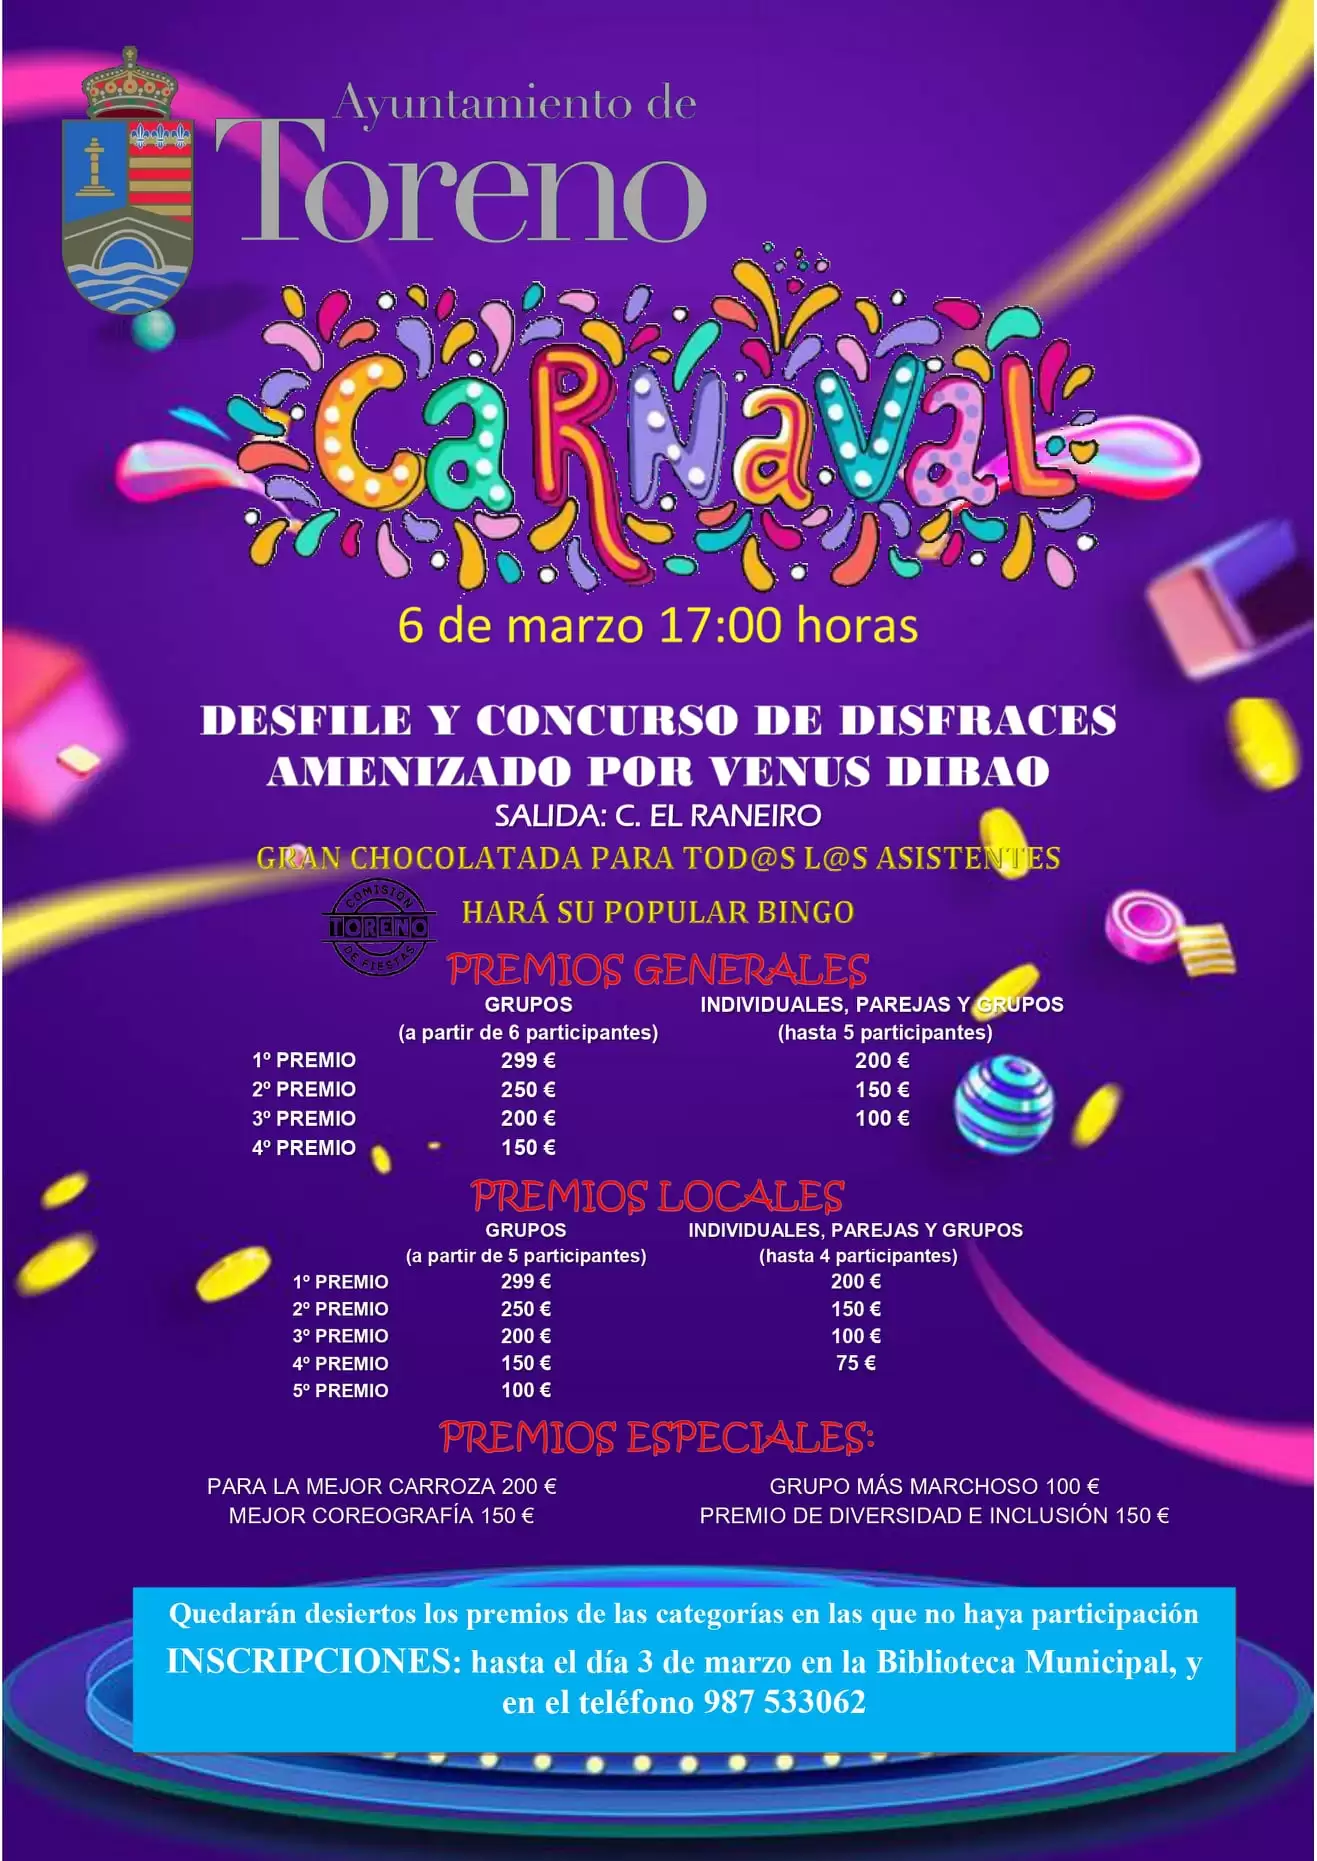 Carnaval en el Bierzo. Todas las fechas y horarios para que no te pierdas nada 13